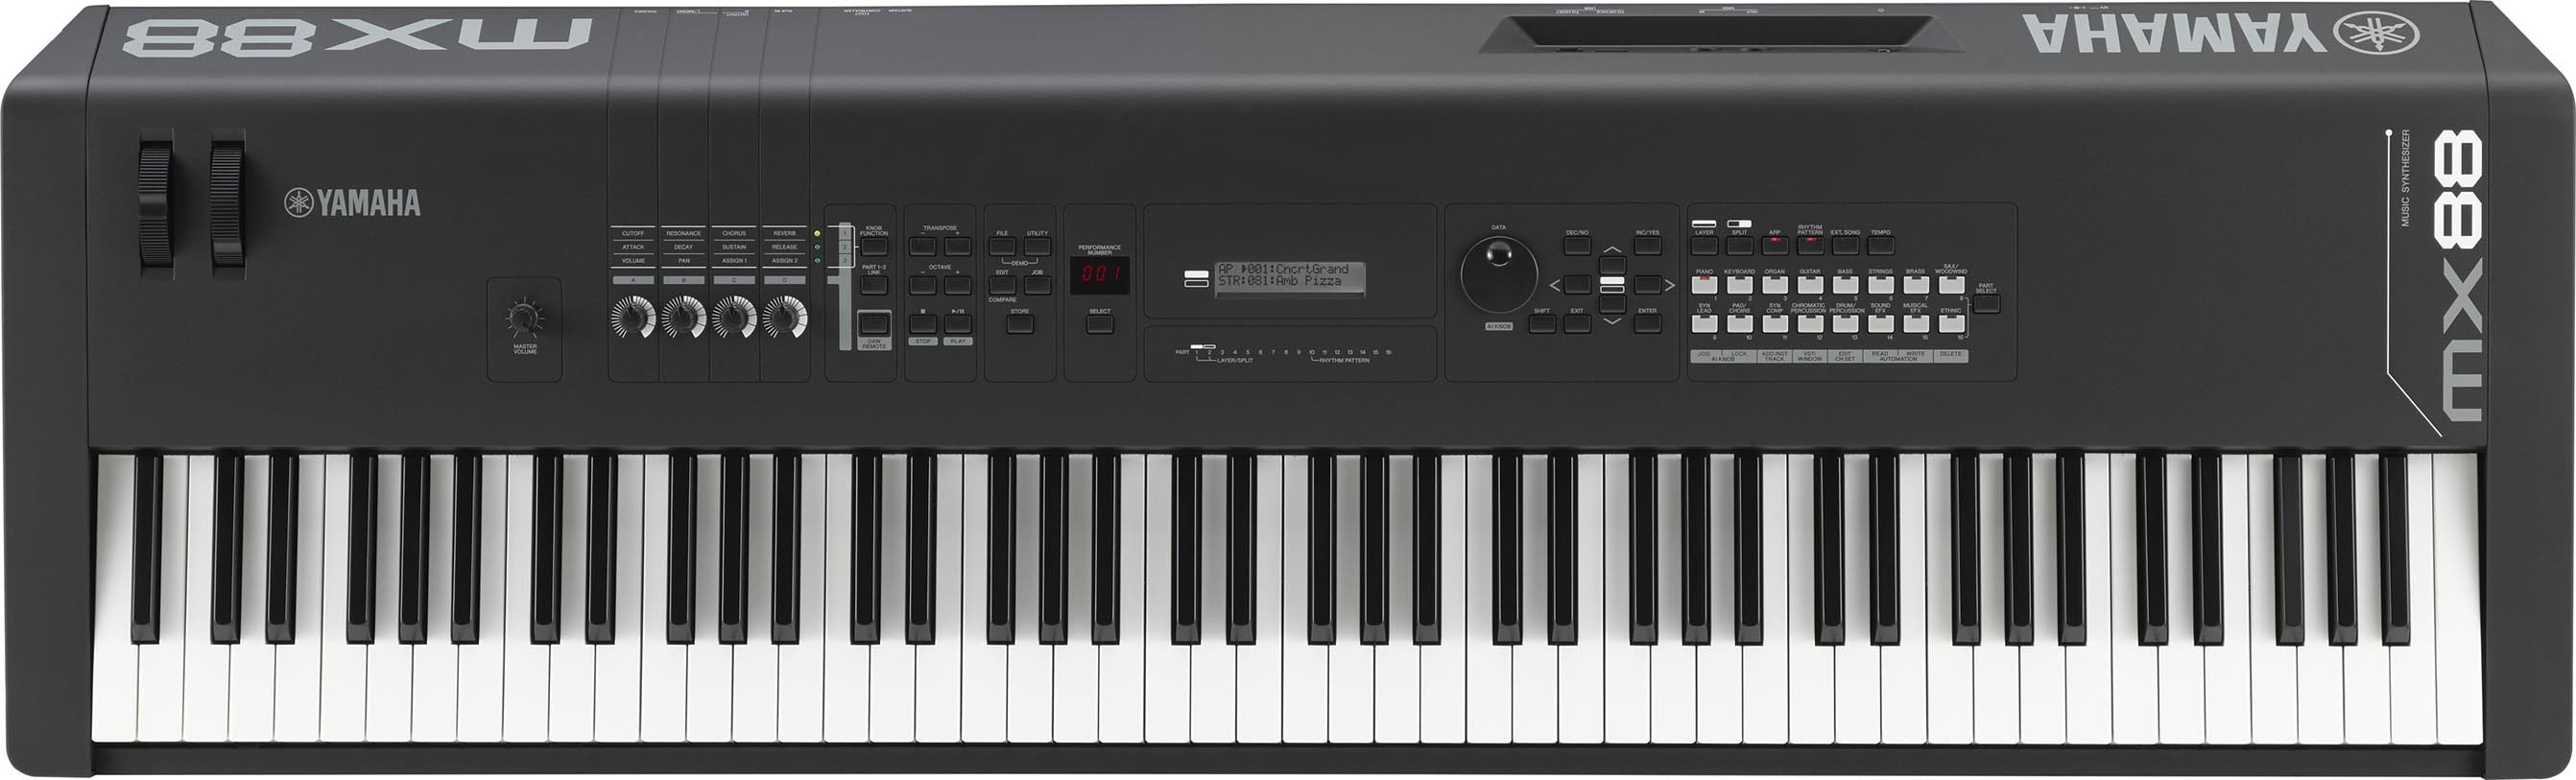 Clavier numérique 88 touches 128 rythmes et notes interface MIDI